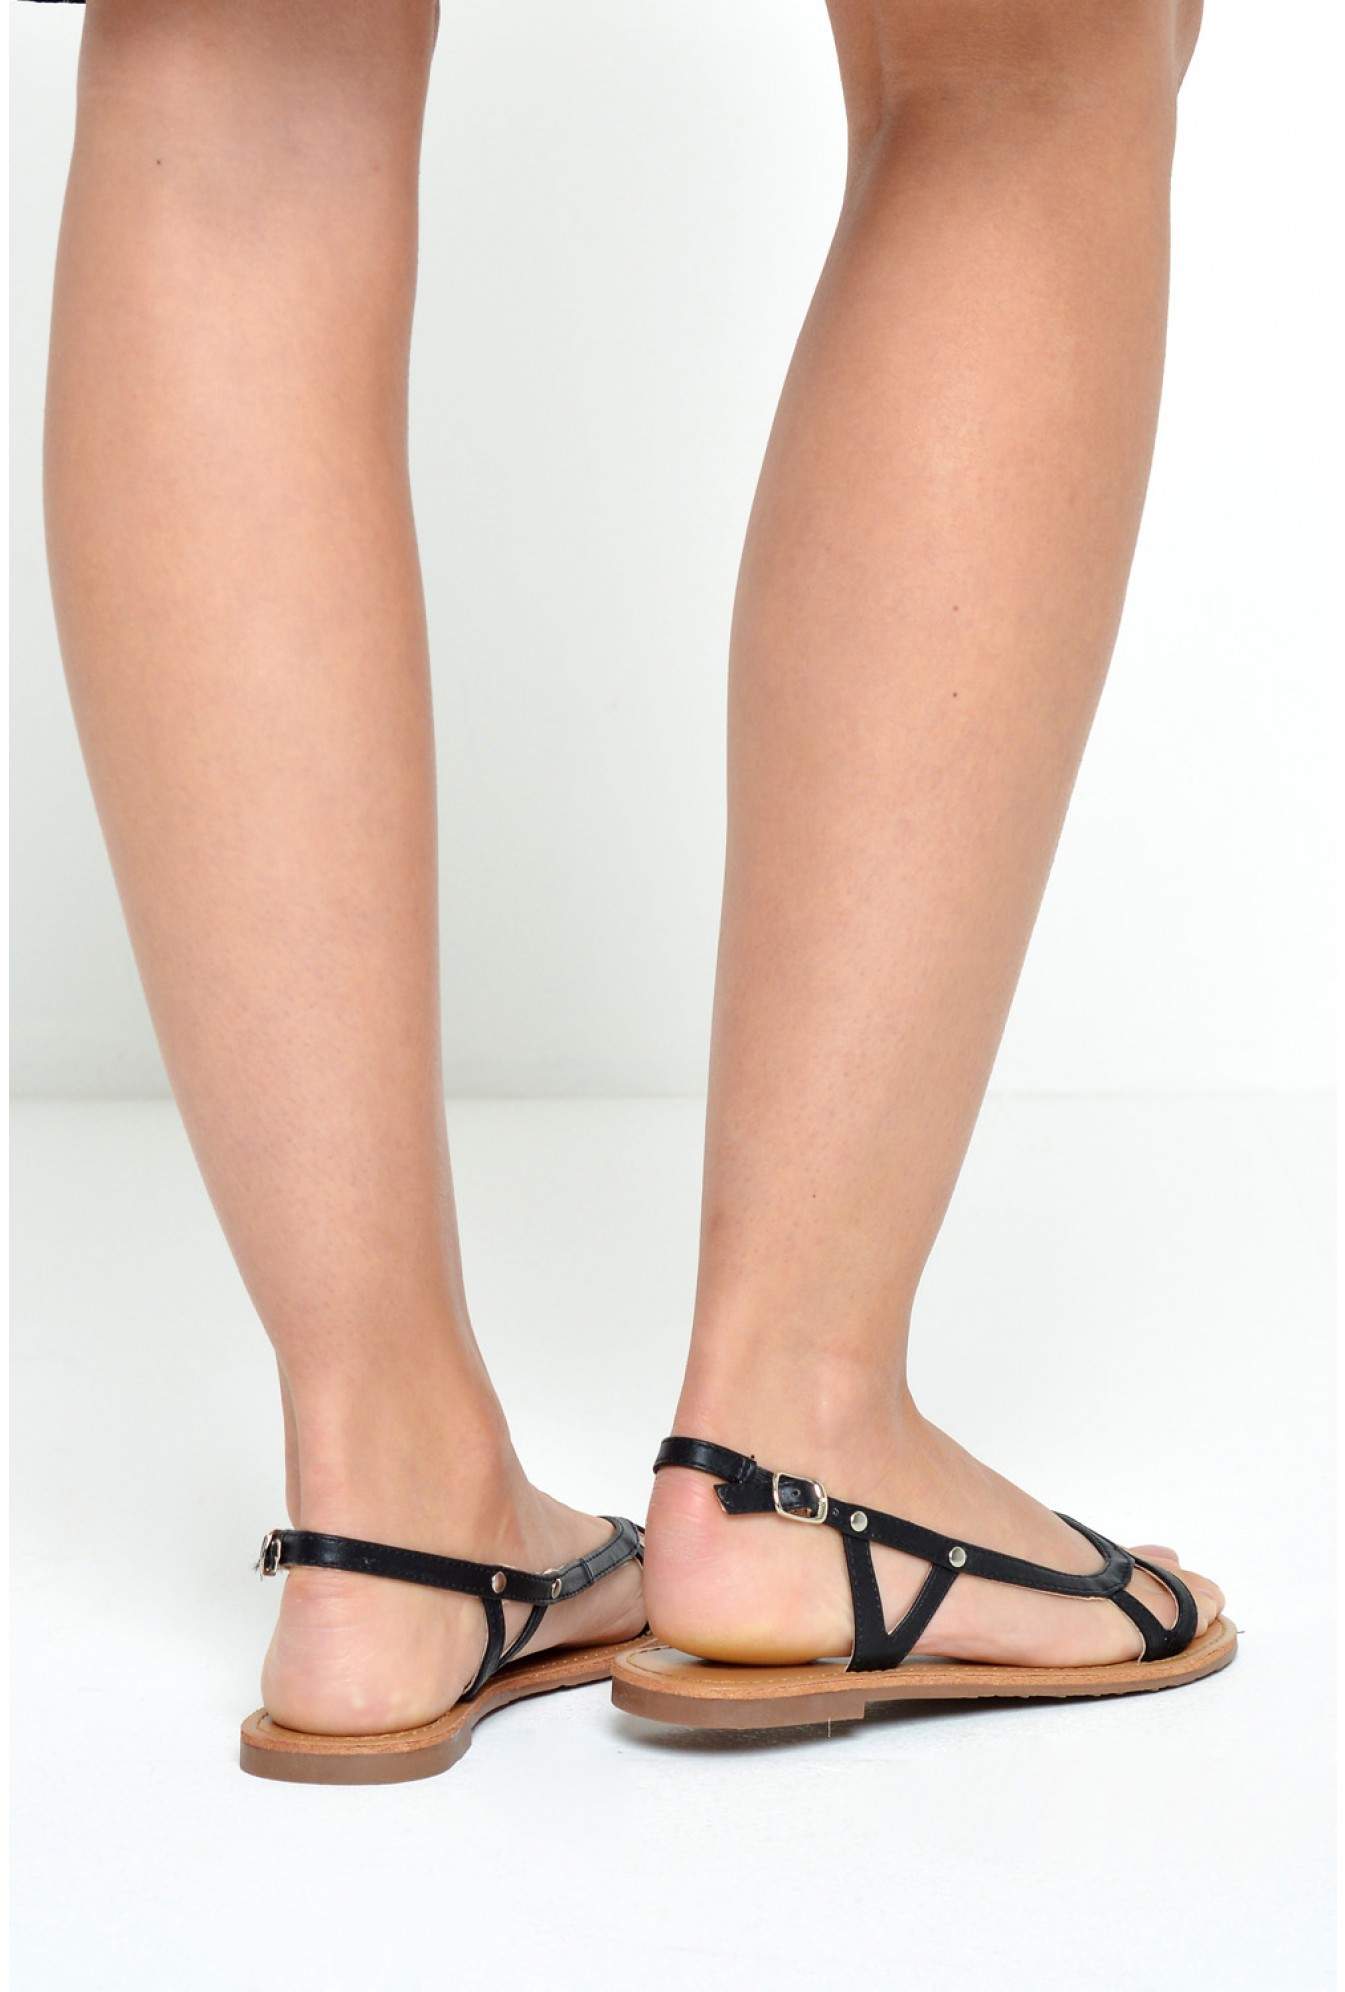 C'M Paris Danni Flat Sandals in Black | iCLOTHING